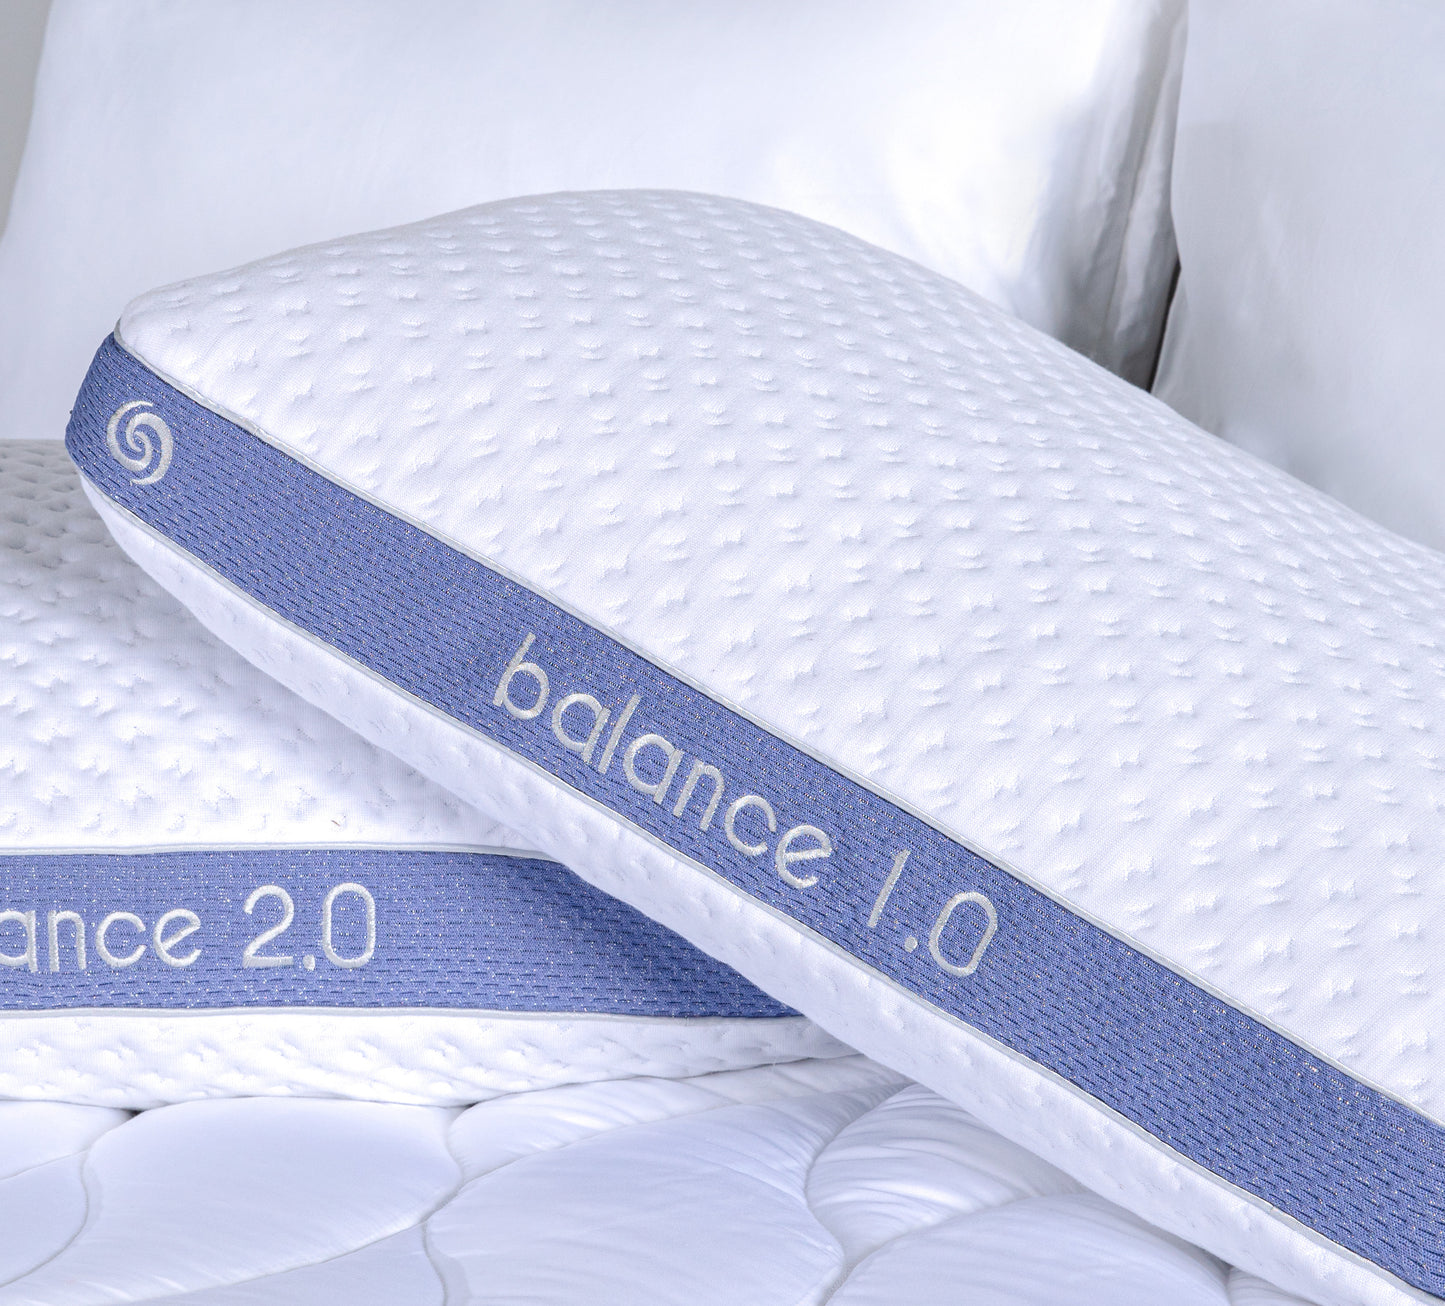 BedGear Balance II 2.0 Pillow